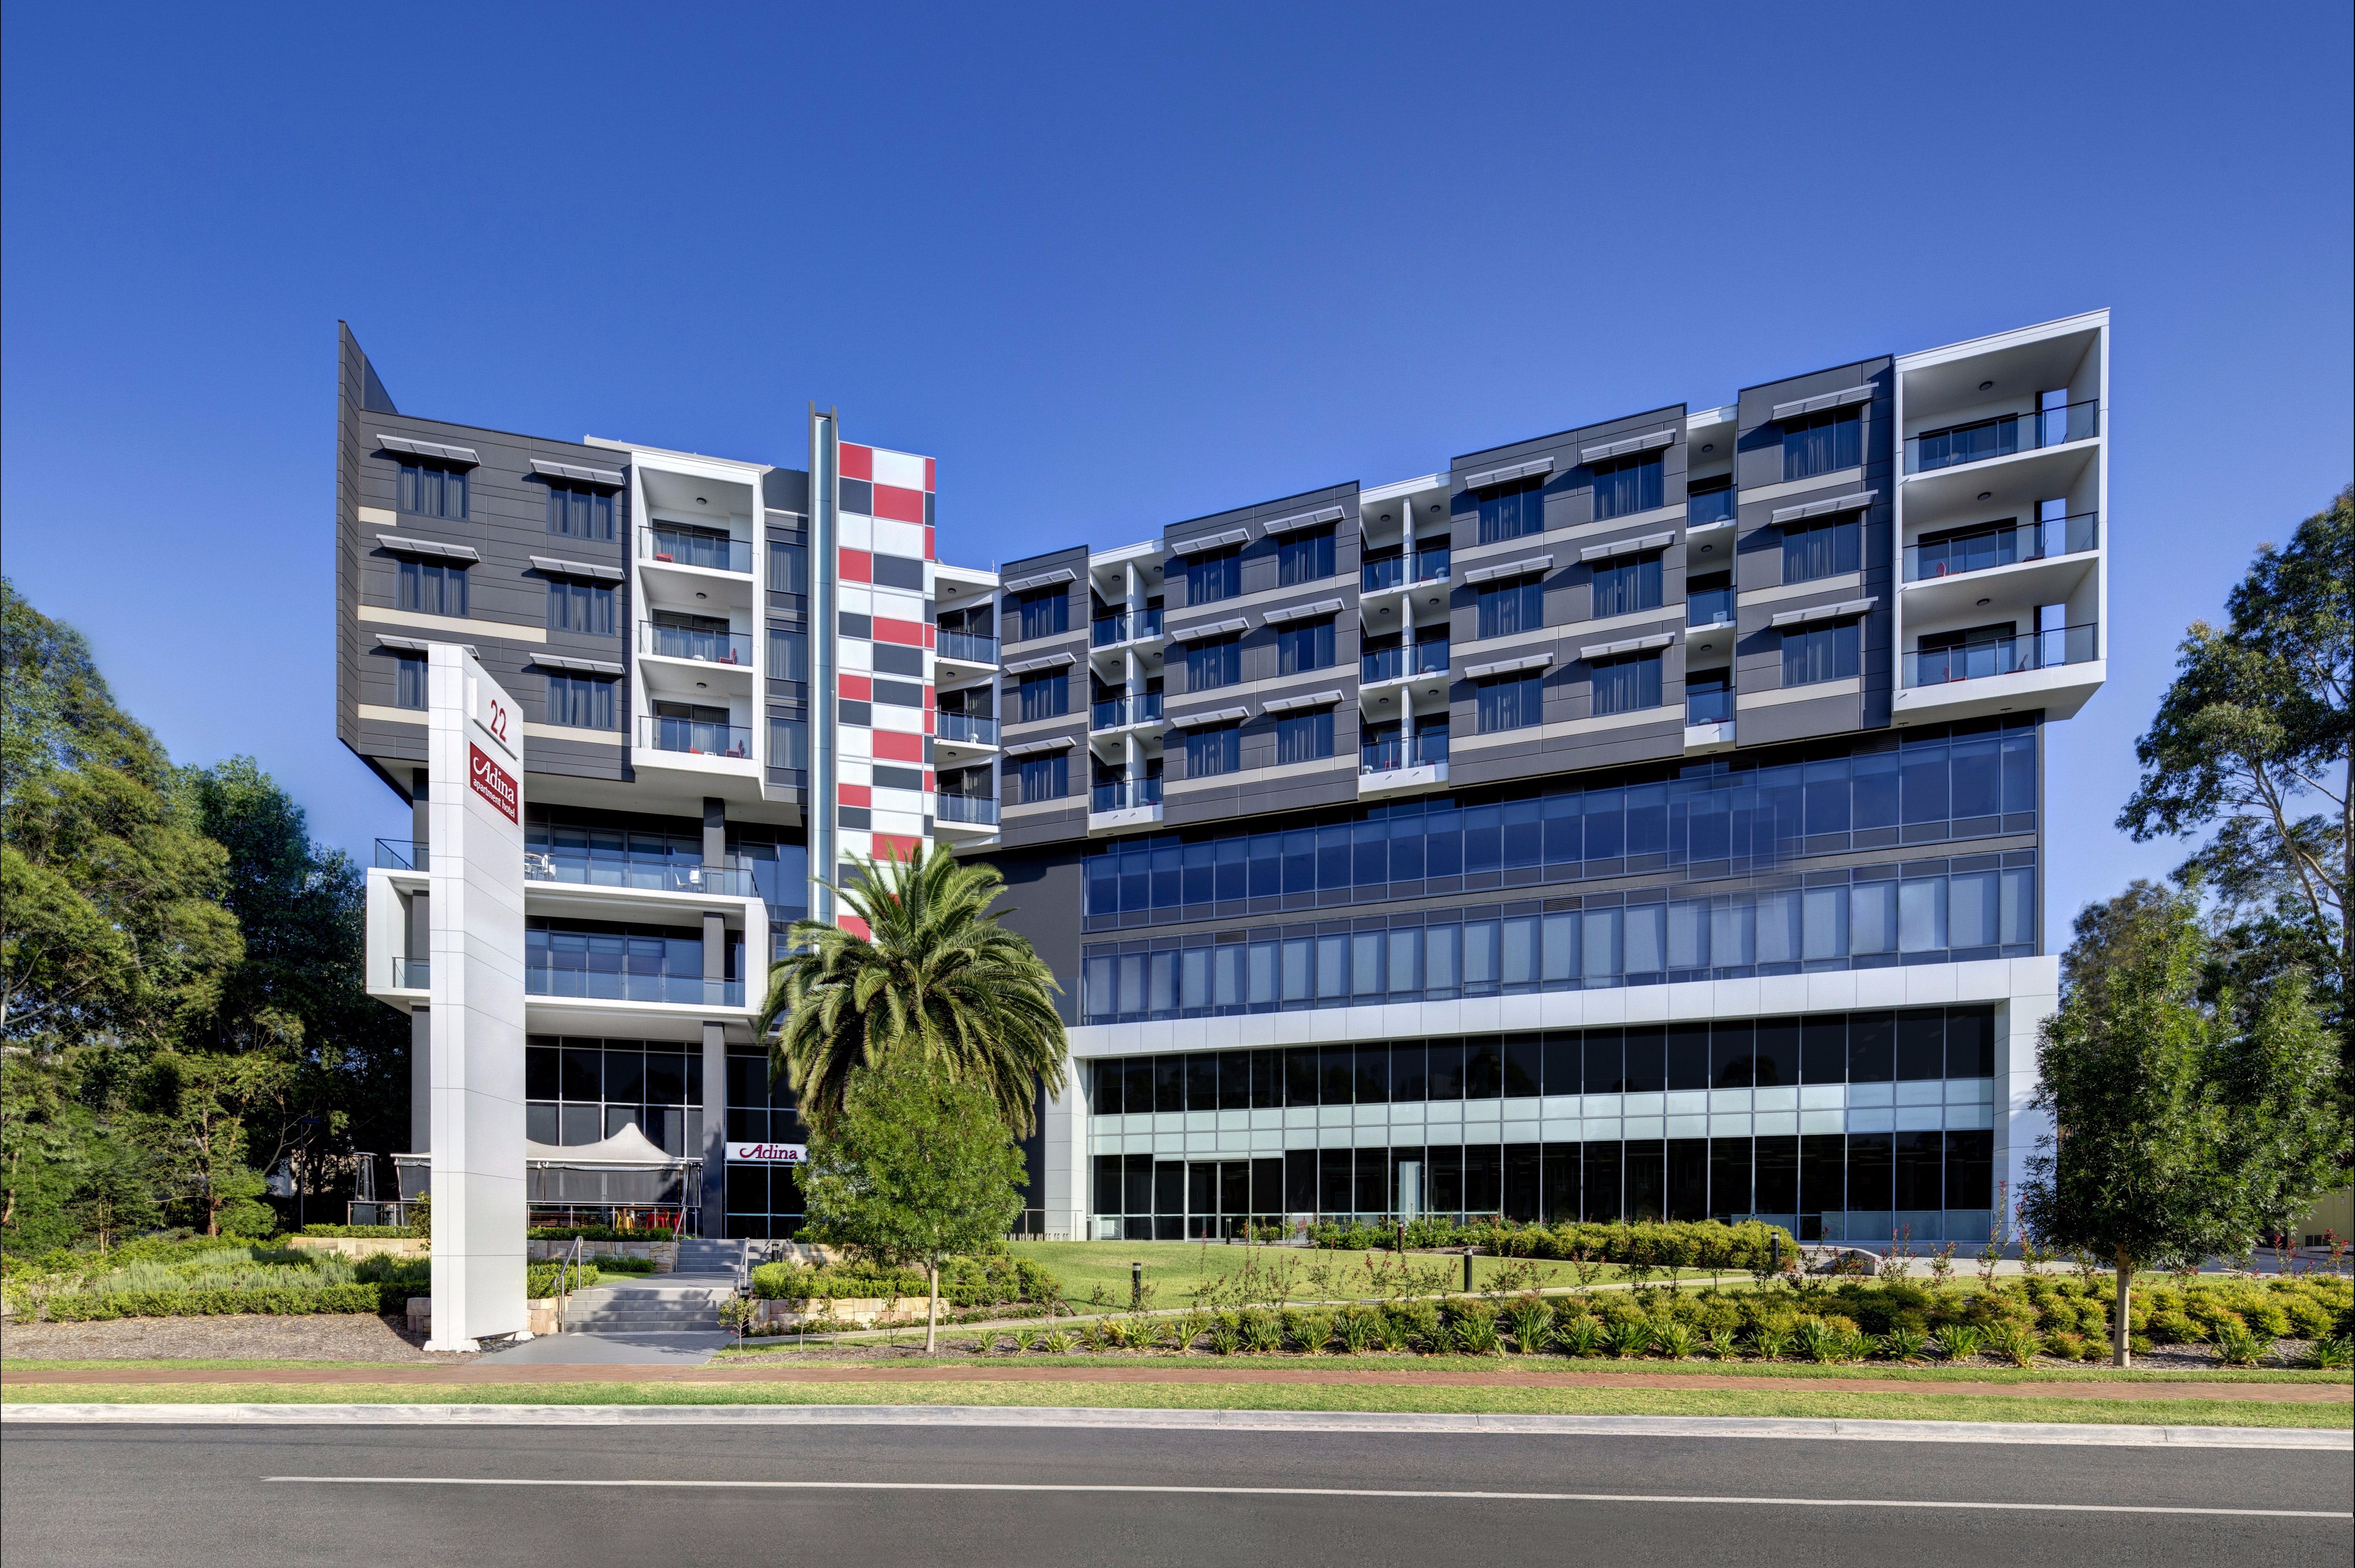 Adina Apartment Hotel Norwest Sydney - Accommodation Yamba